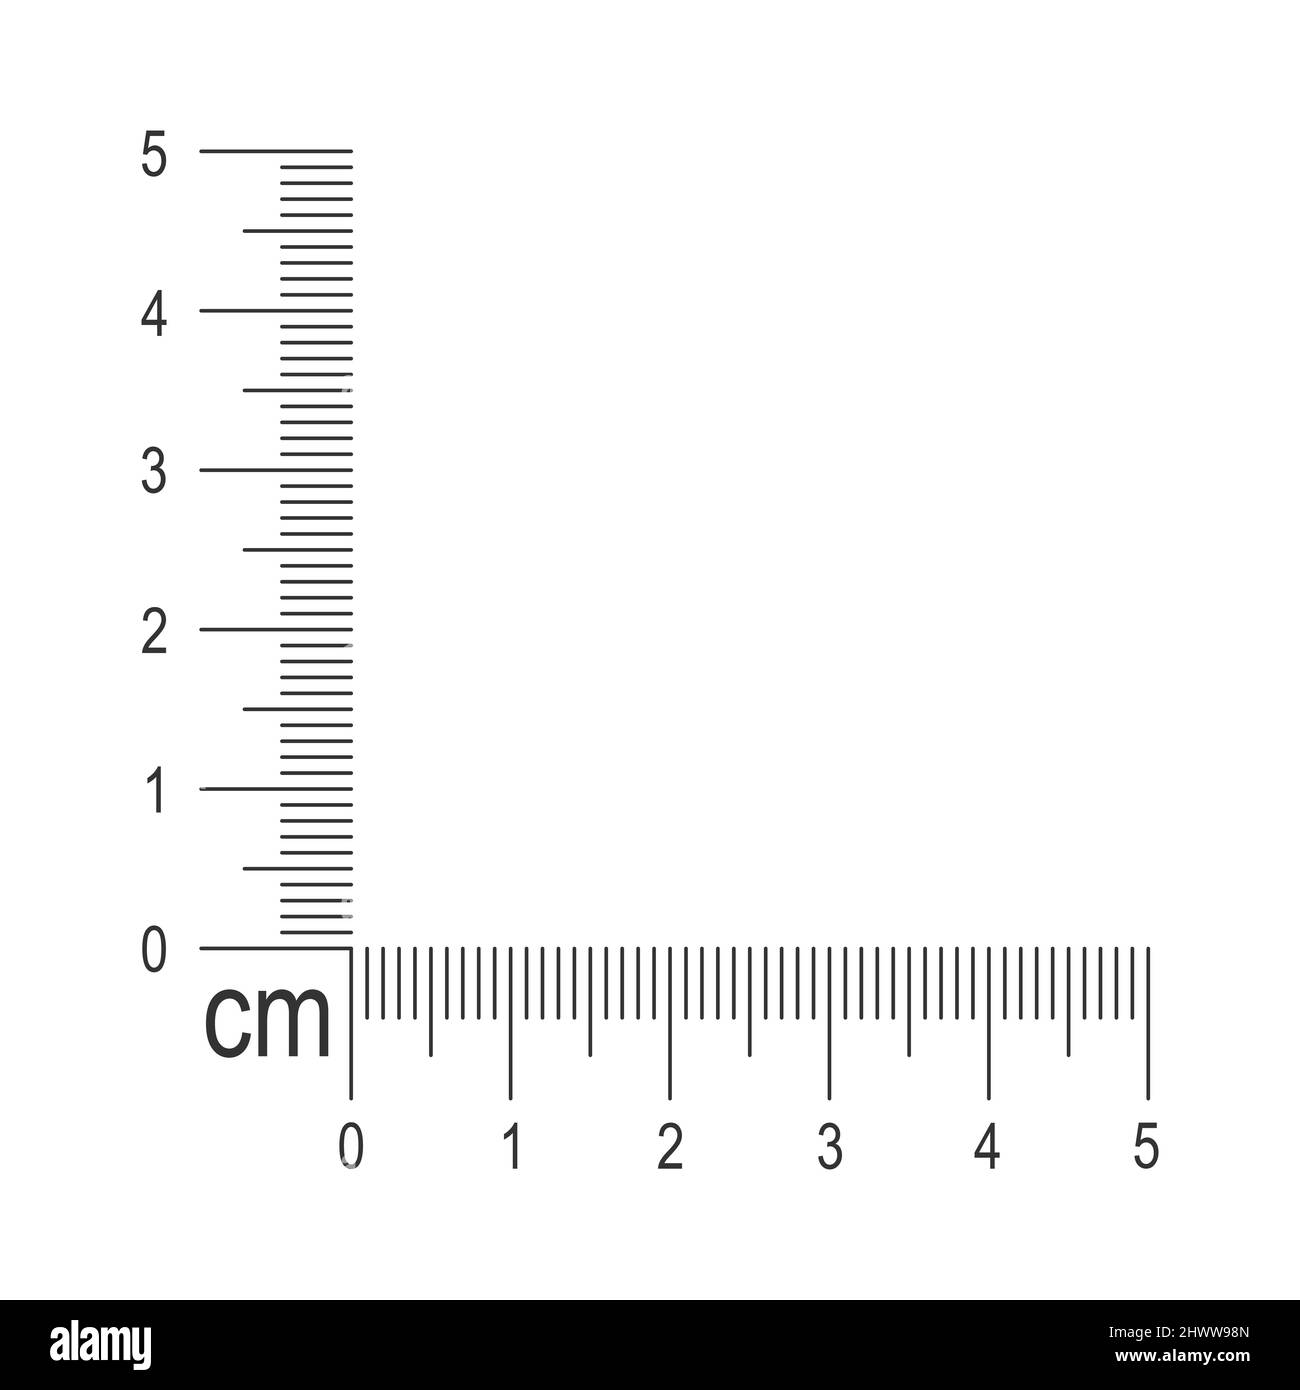 Thước đo góc 5 centimeter - một công cụ đo lường cần thiết và hữu ích trong cuộc sống hàng ngày. Với thiết kế nhỏ gọn và tiện dụng, thước đo góc 5cm sẽ giúp bạn đo lường mọi thứ một cách chính xác và dễ dàng hơn bao giờ hết. Hãy đến và khám phá ngay!